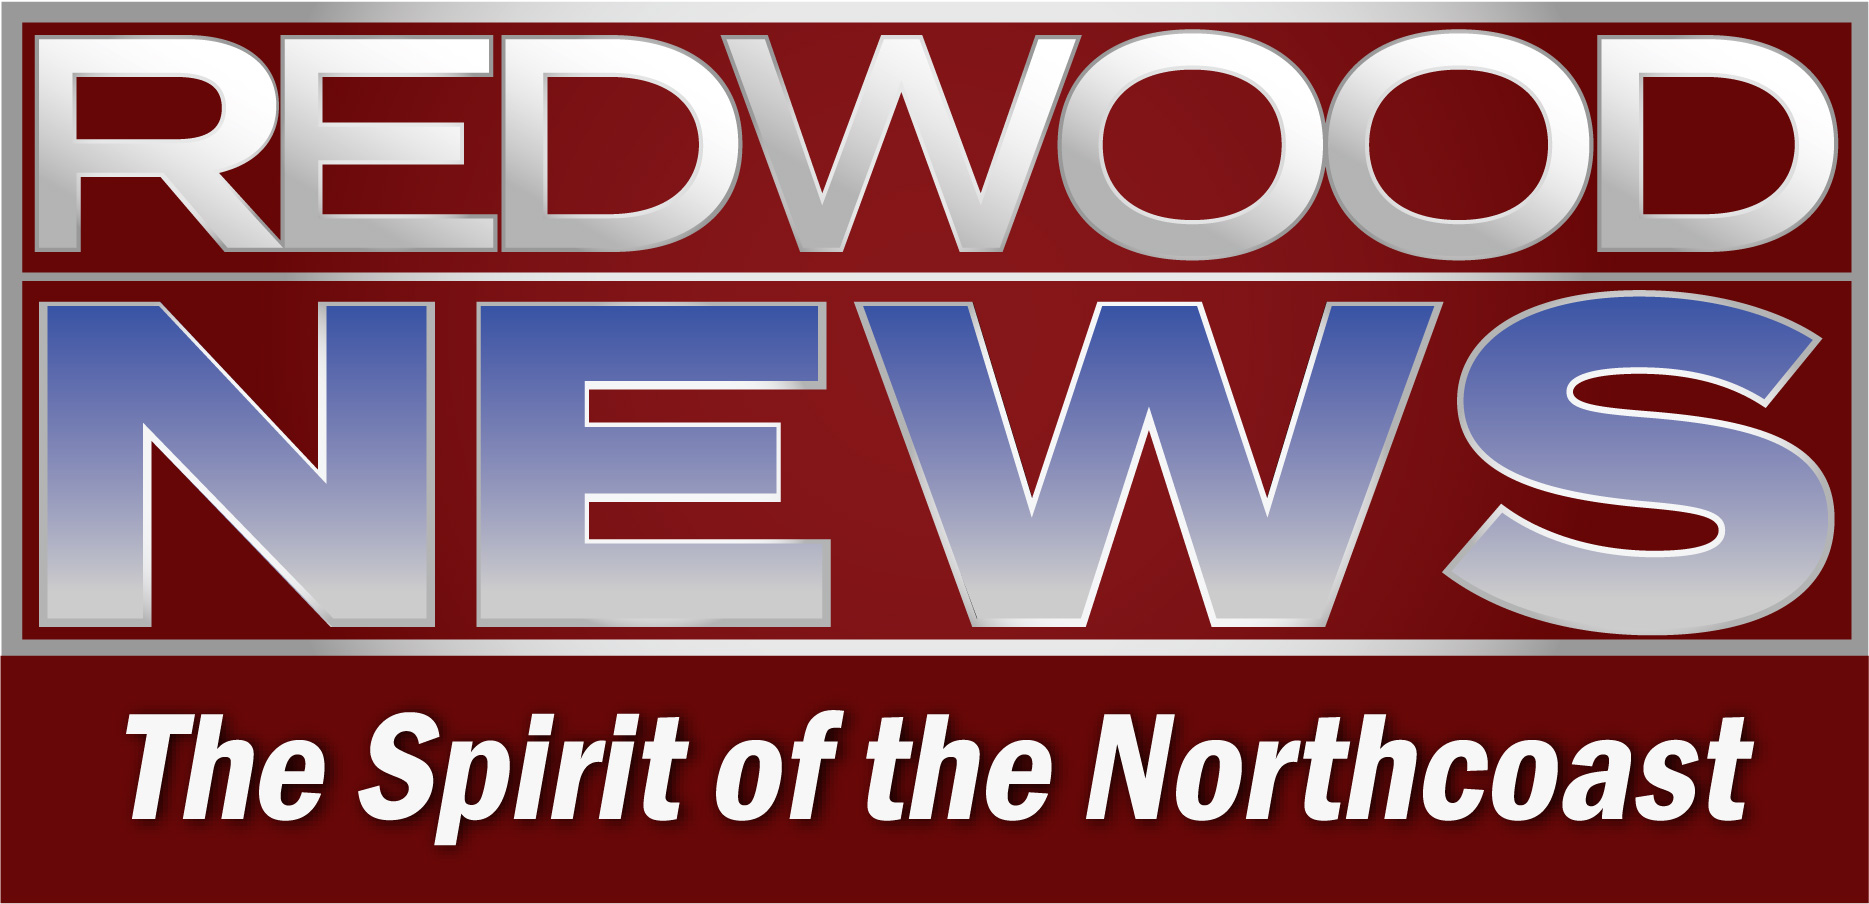 Redwood News (socio de medios)